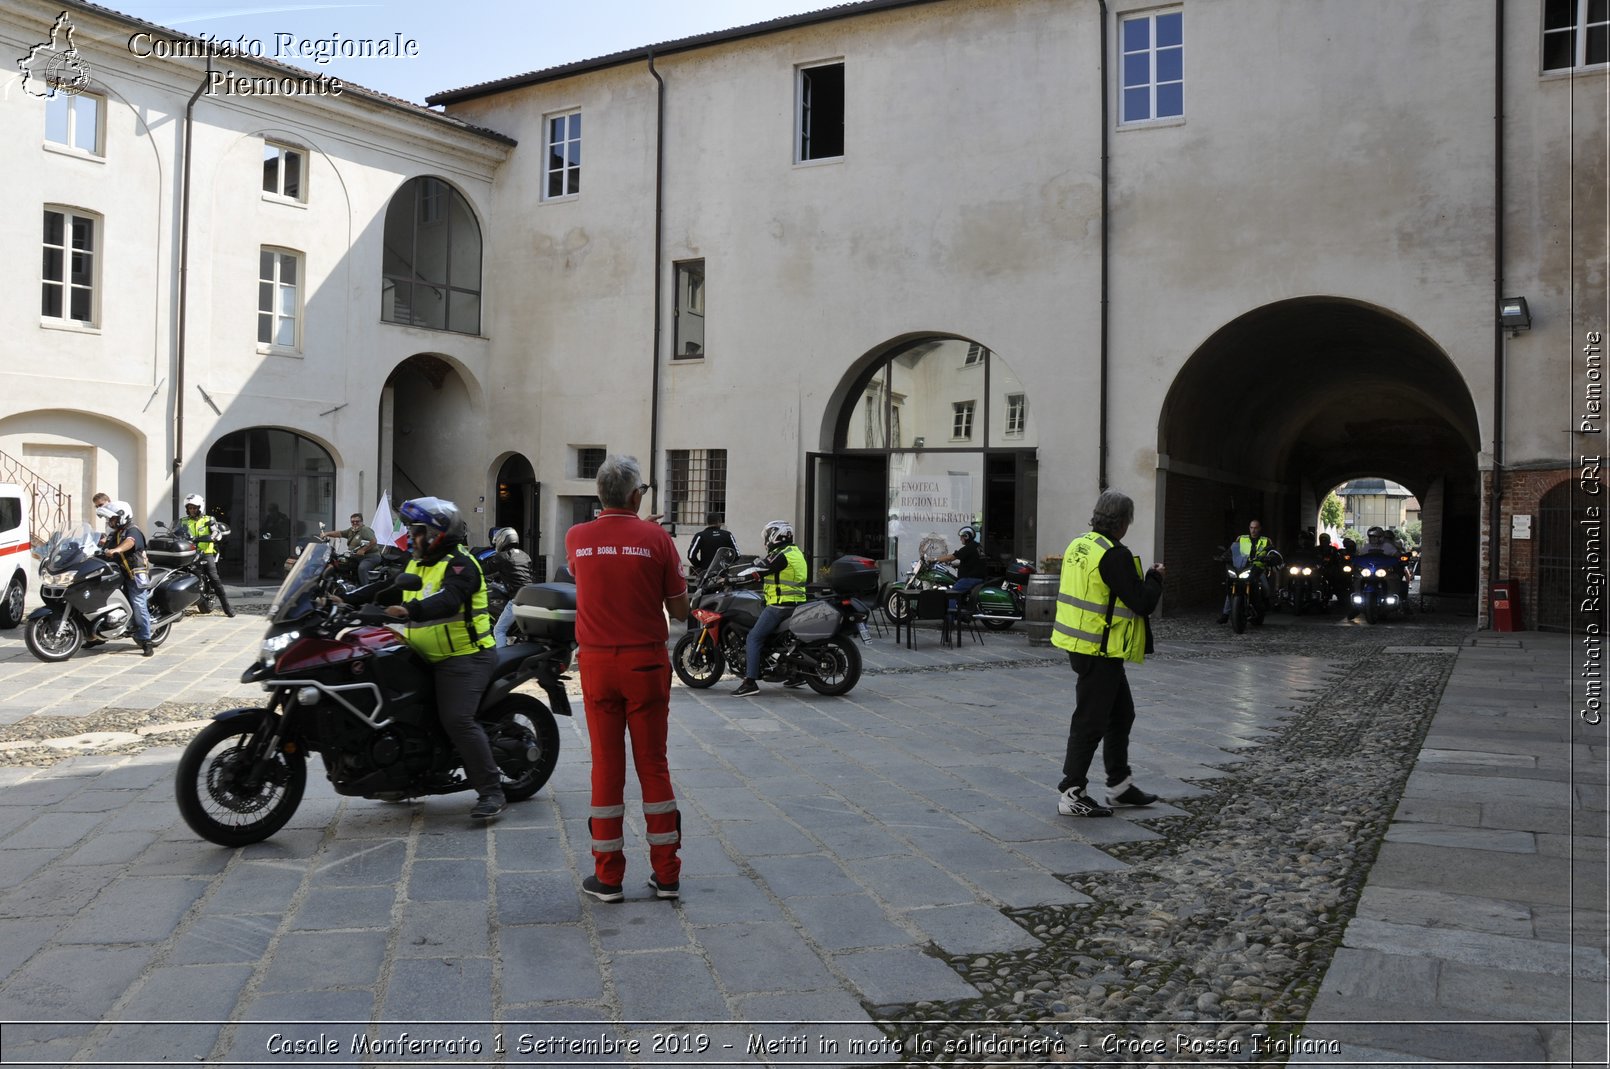 Casale Monferrato 1 Settembre 2019 - Metti in moto la solidariet - Croce Rossa Italiana